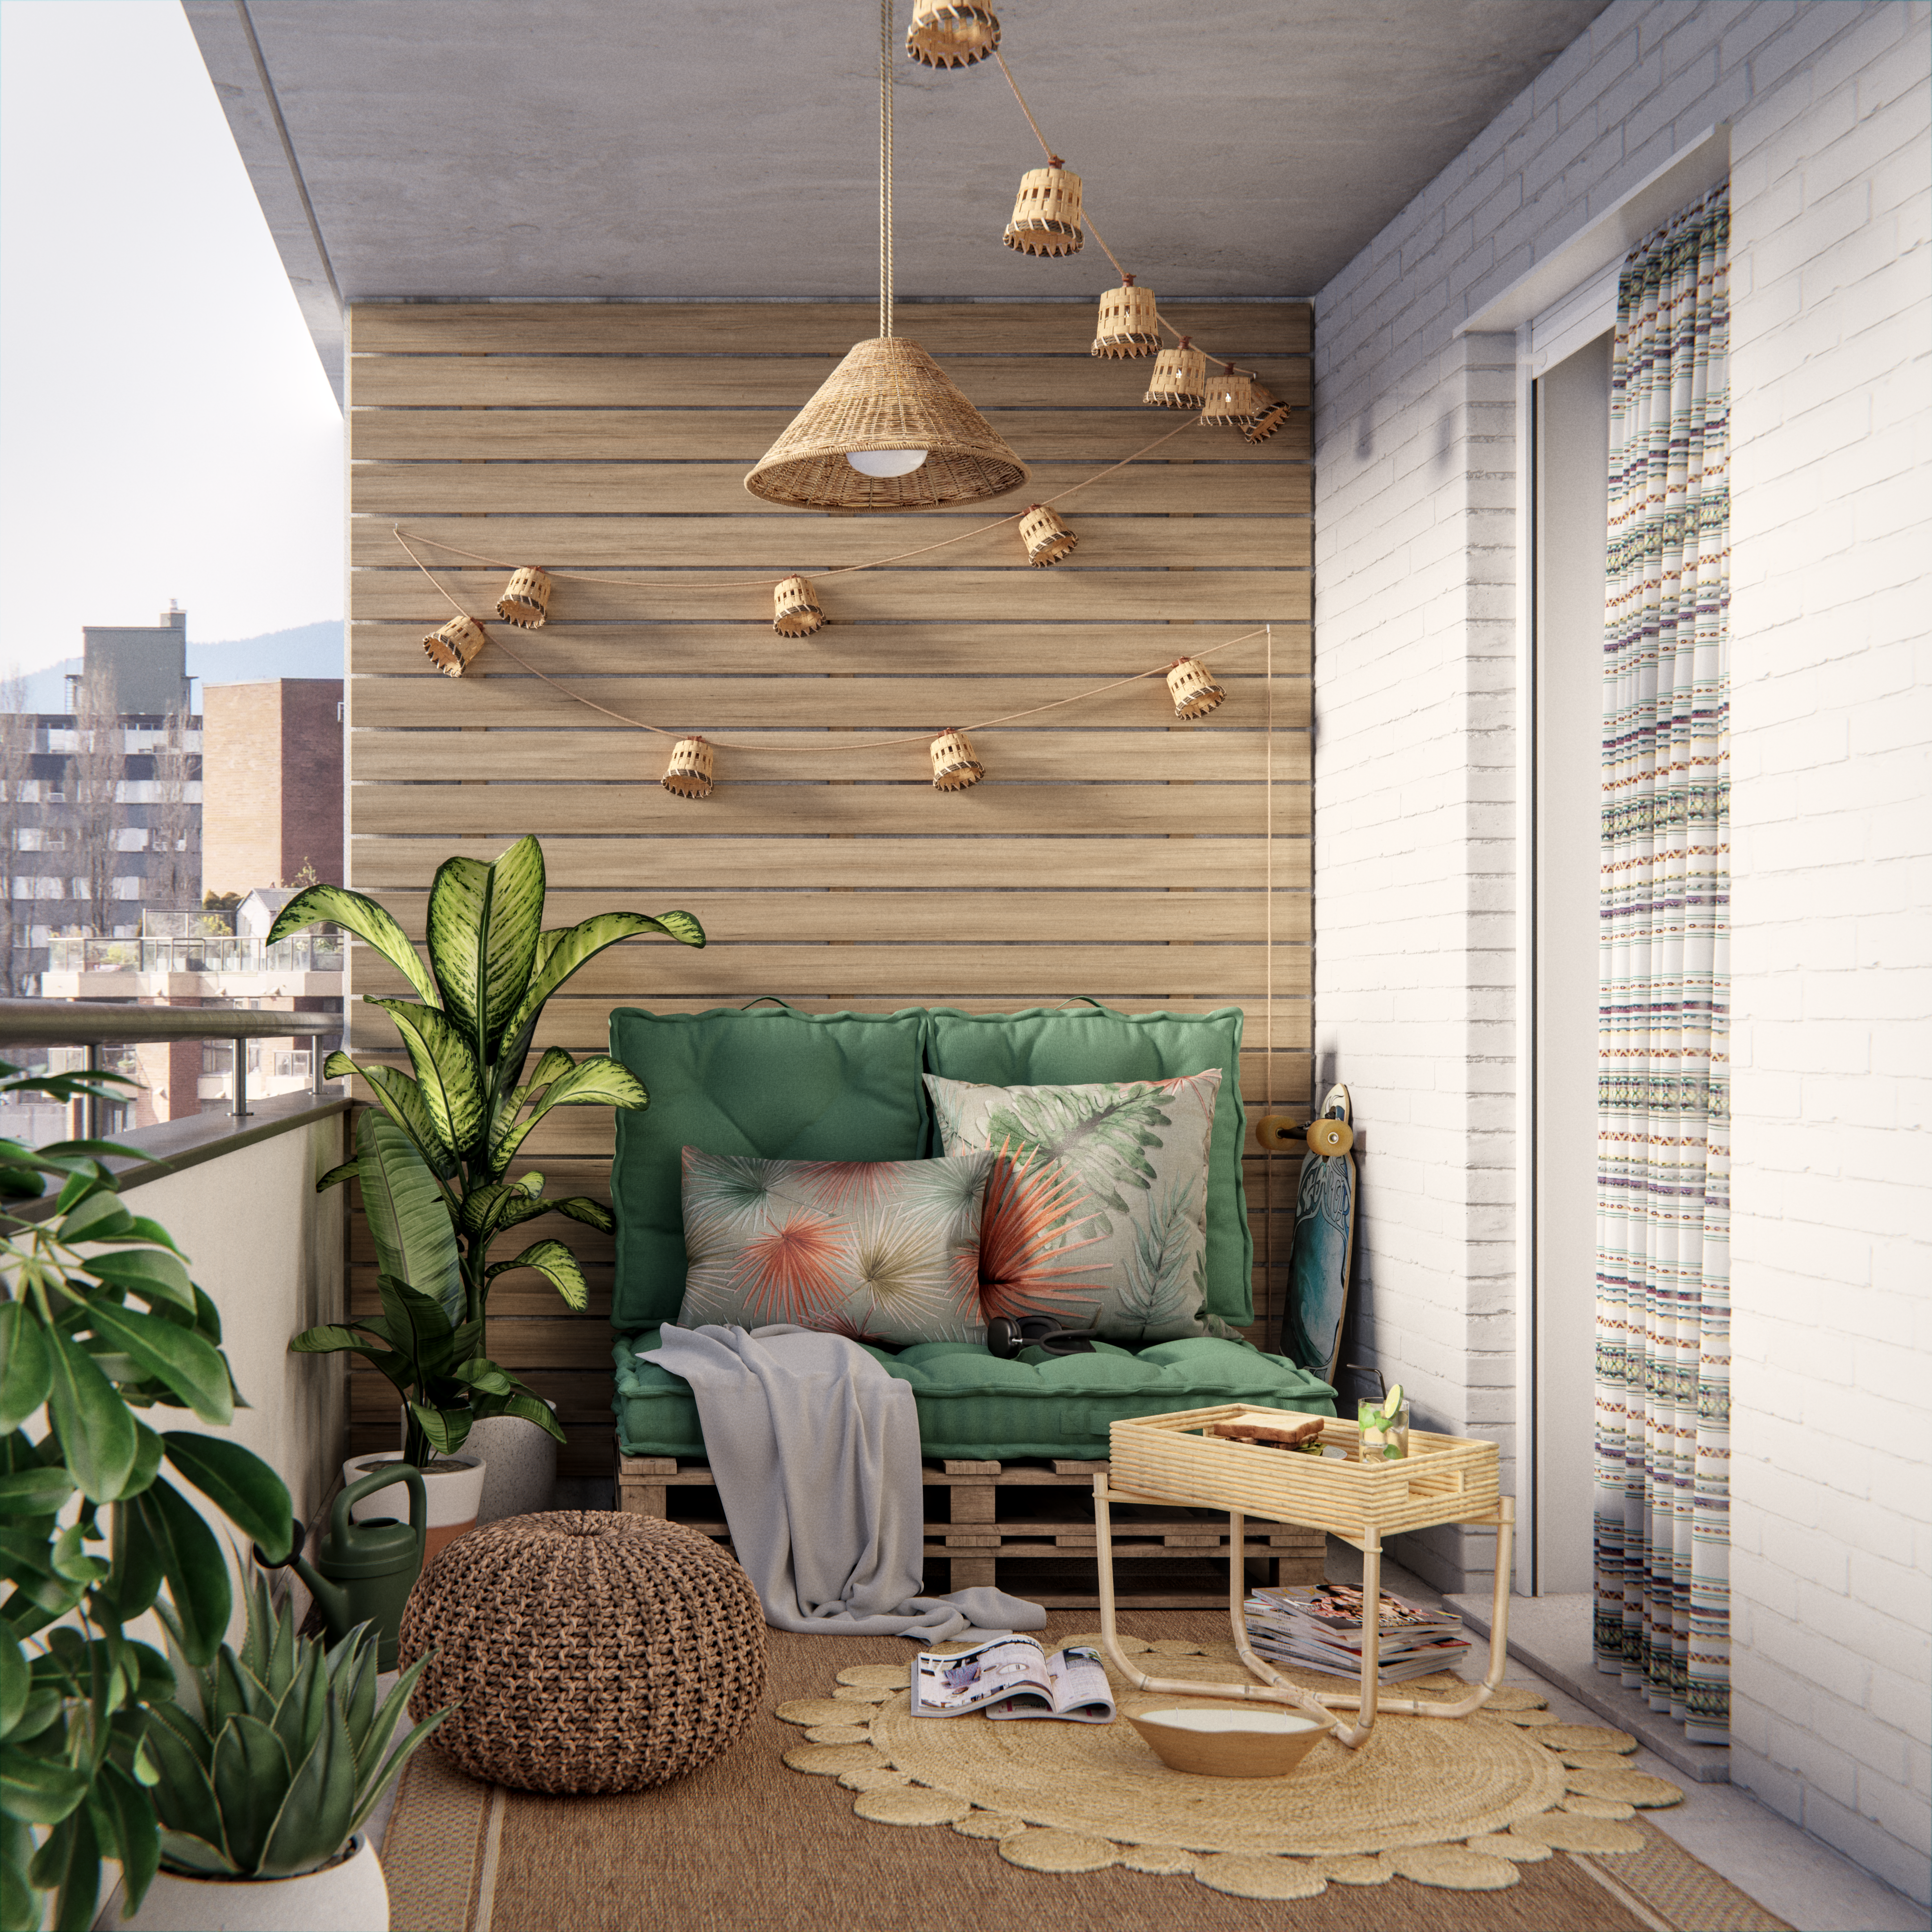 Banco para balcón de 100 cm de ancho - Ideal para balcones pequeños